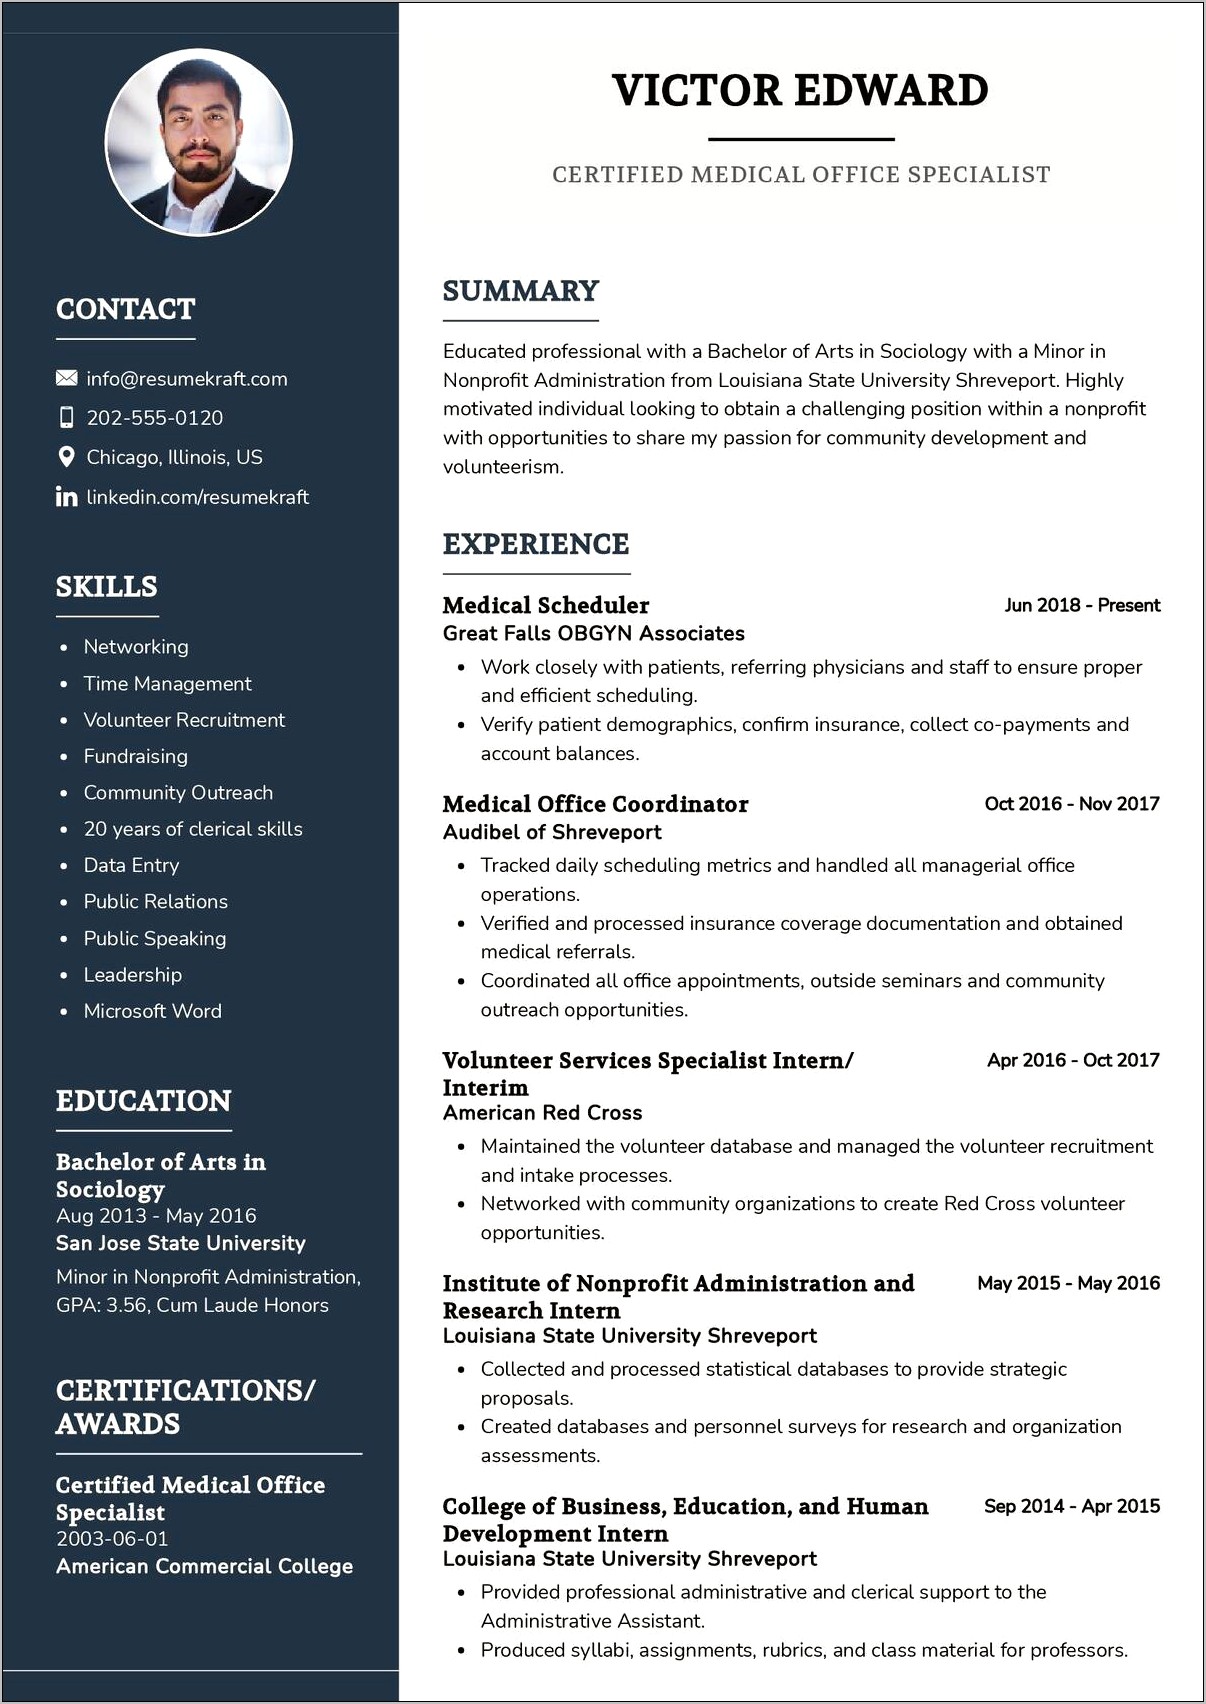 Medical Scheduler Job Description For Resume